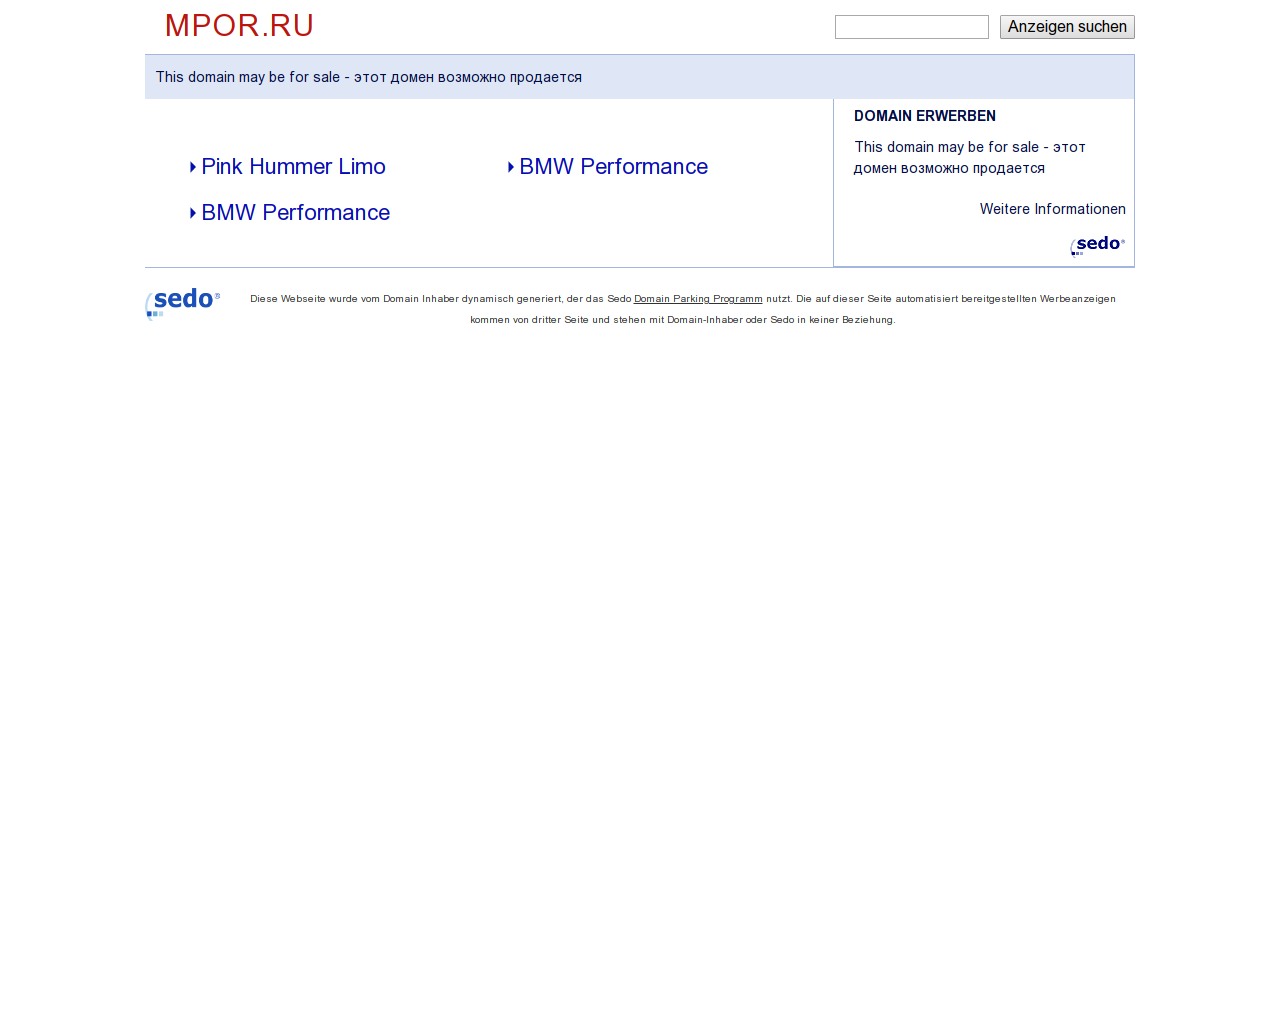 Изображение сайта mpor.ru в разрешении 1280x1024